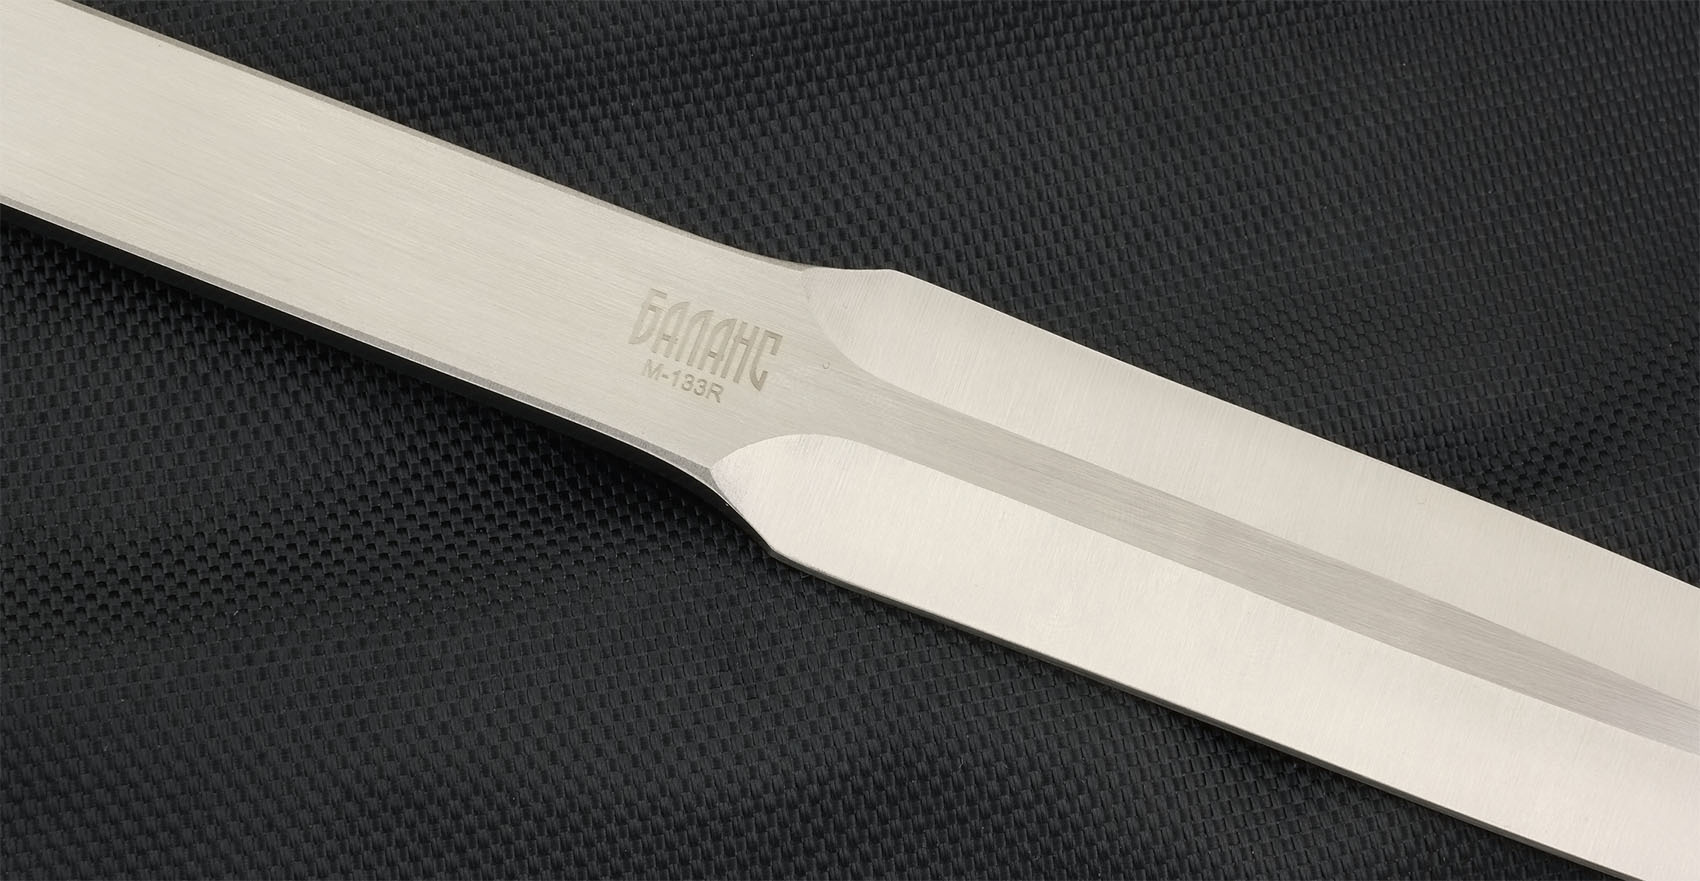 Набор из 3 метательных ножей Орел, M-133R от Ножиков